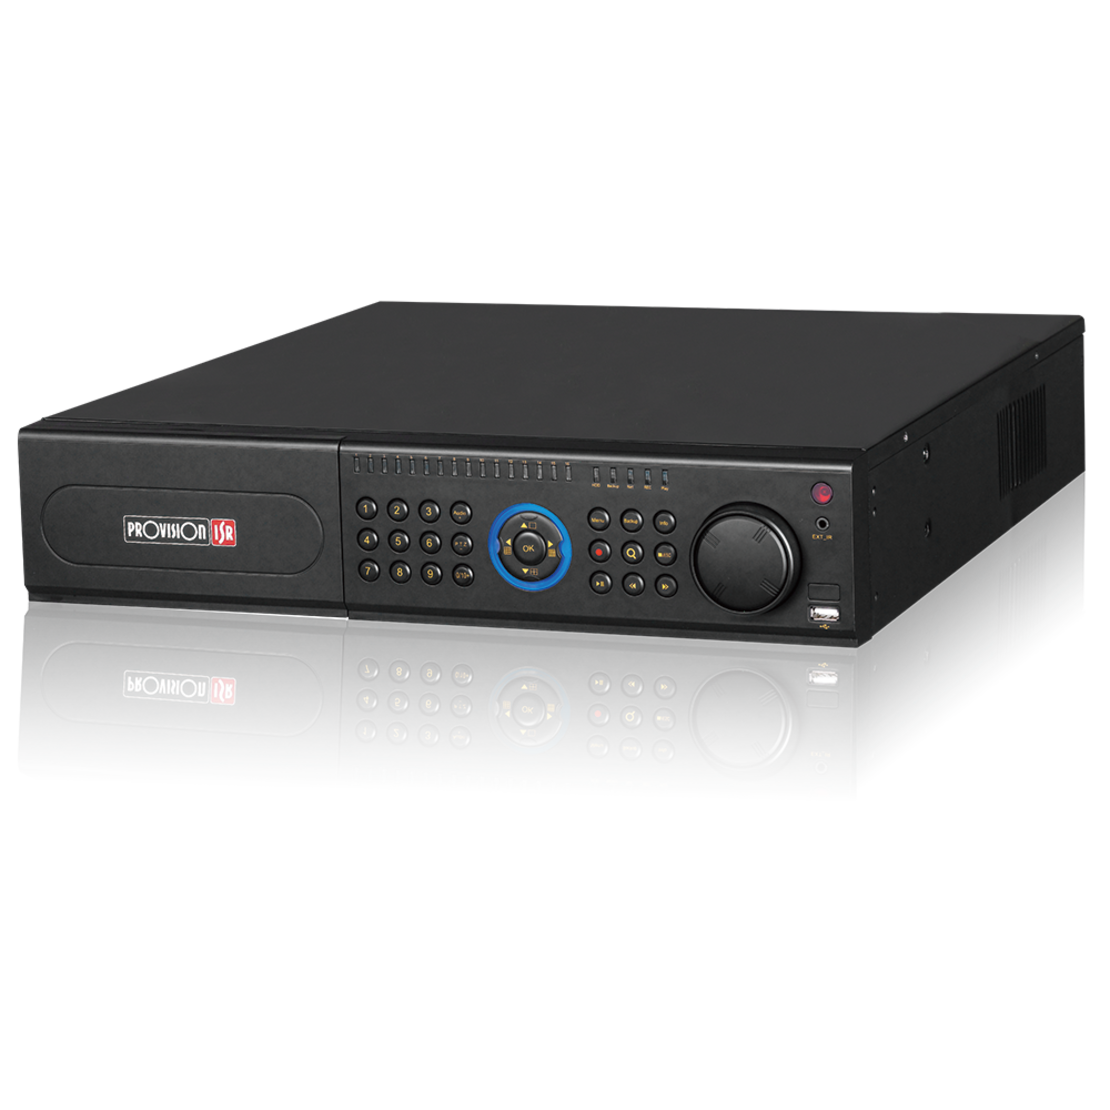 מערכת הקלטה ל64 מצלמות NVR8-641600R (2U) Provision 8mp כולל דיסק קשיח 4TB